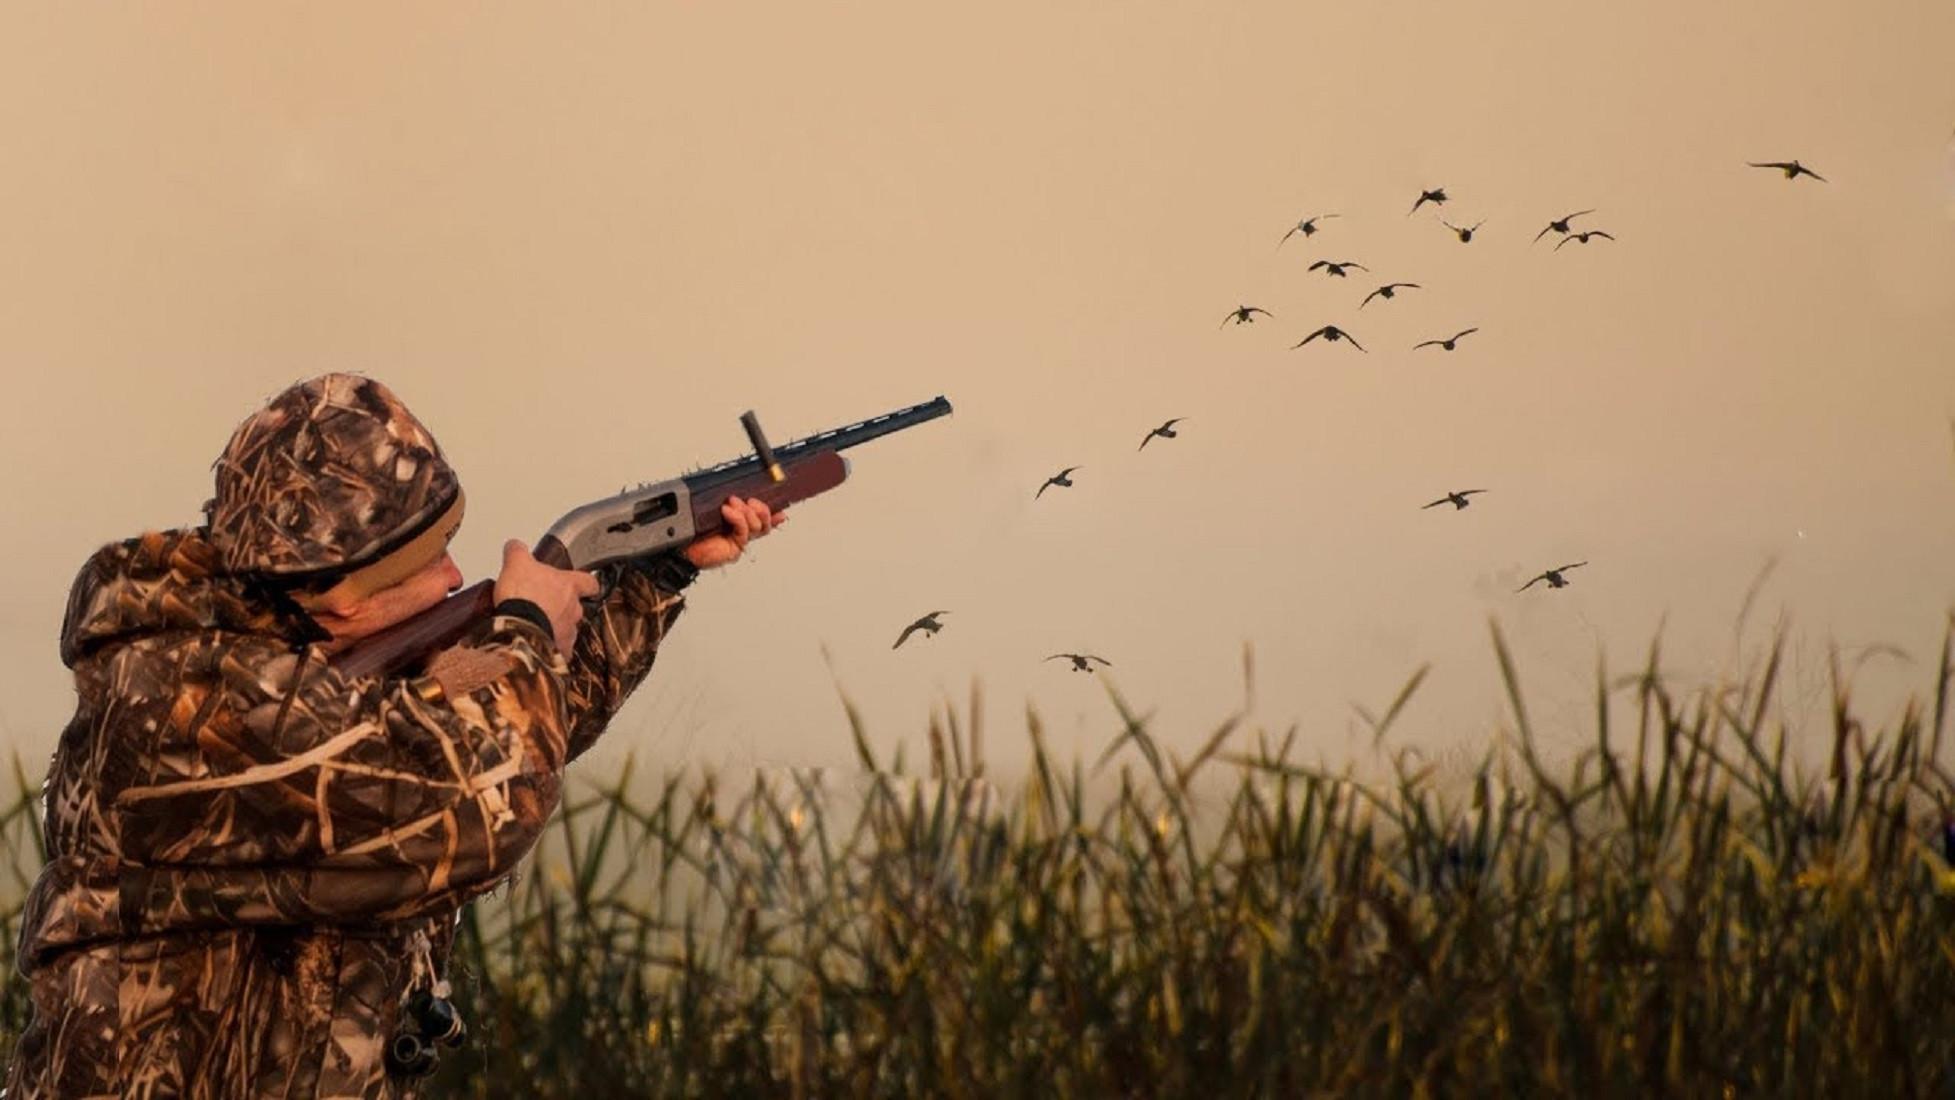 Осуществление спортивной и любительской охоты на территории Белгородской области запрещено